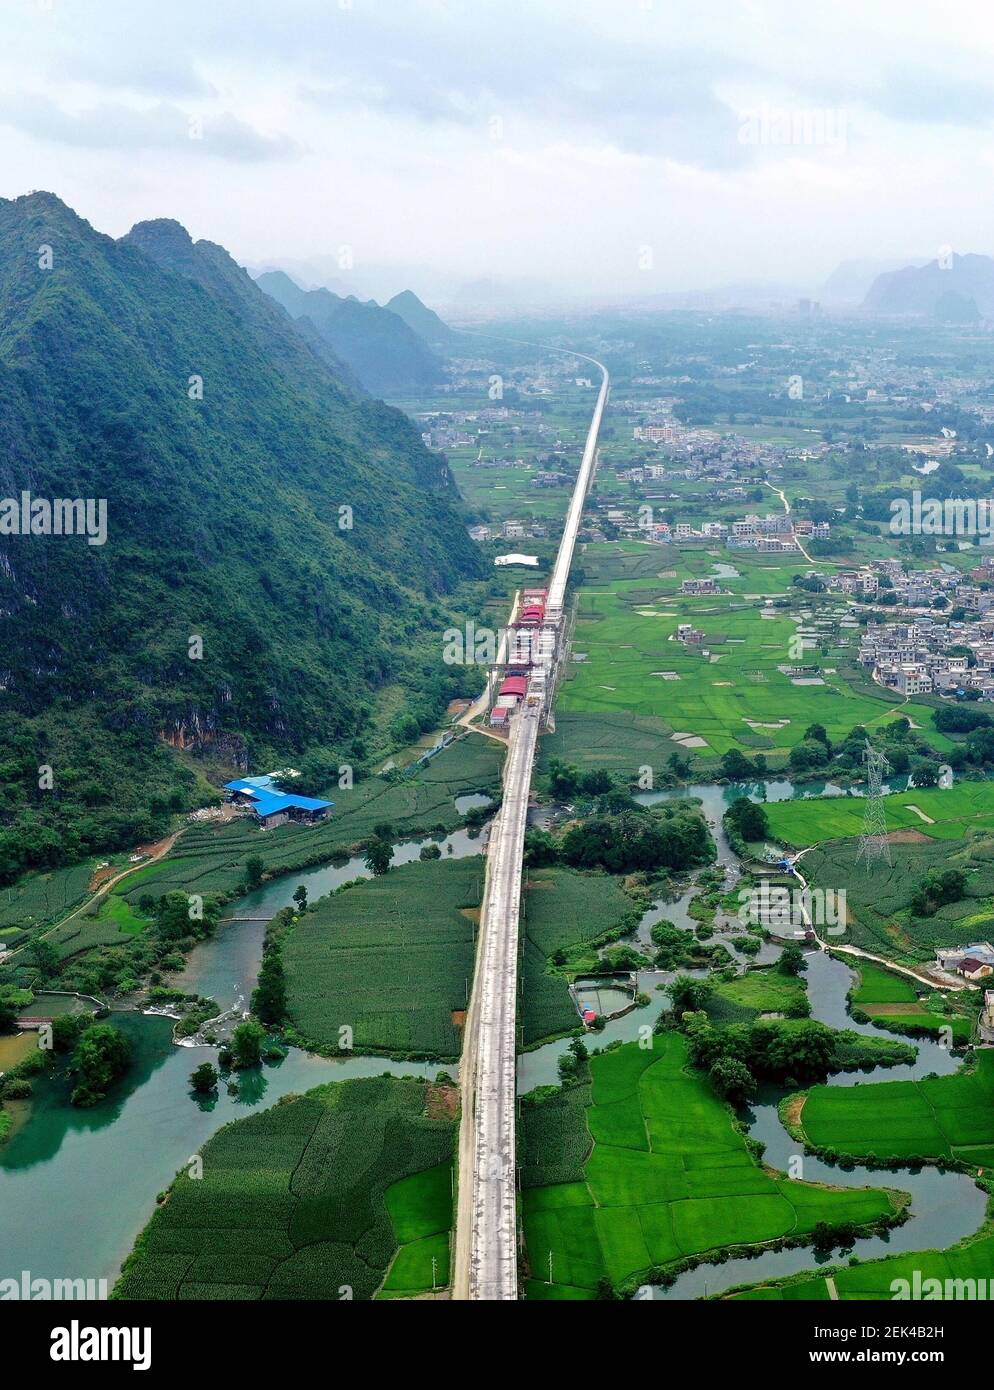 HECHI, CHINA - 31. MAI 2020 - Luftaufnahme der Chengjiang-Doppelgleis-Super-Major-Brücke im Bau über dem ländlichen Gebiet des Autonomen Landkreises Guangxi Du'an Yao. Hechi, Guangxi, China, 31. Mai 2020. Die Gesamtlänge der Brücke beträgt 15,5km, die längste der bestehenden Eisenbahnbrücken in Guangxi. (Foto von Gao Dongfeng / Costfoto/Sipa USA) Stockfoto